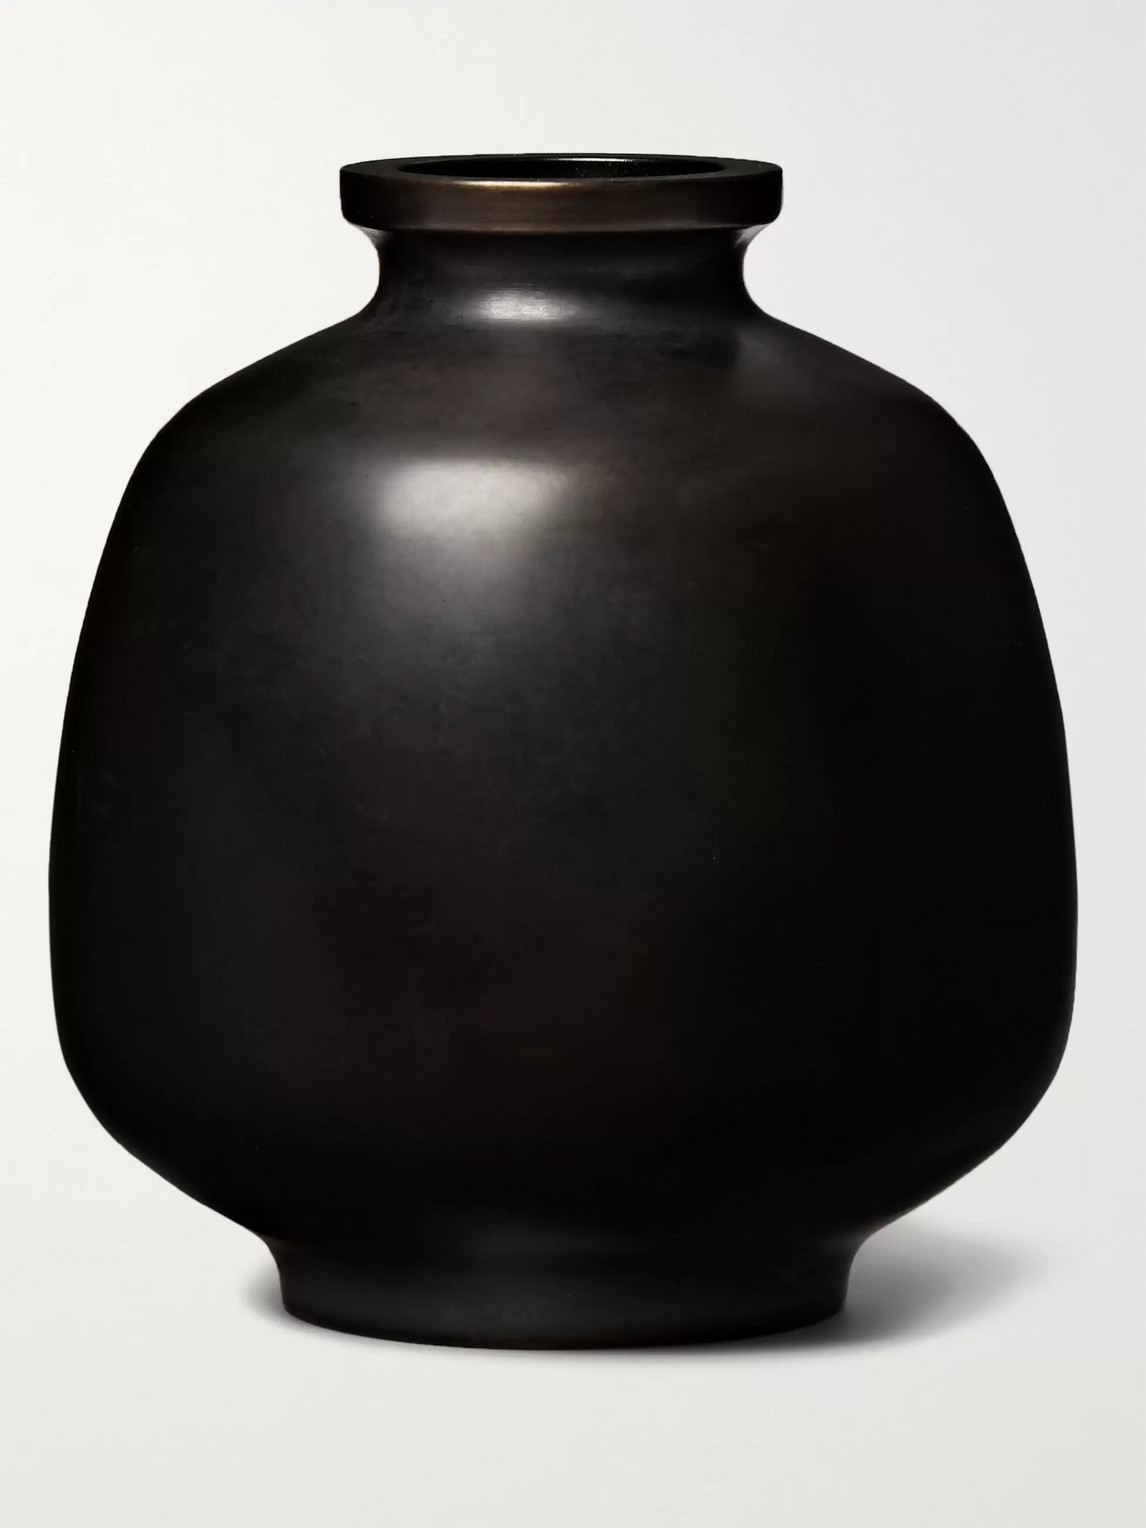 Roman & Williams Guild Nousaku Hana Mitsubo Ceramic Vase In Gray